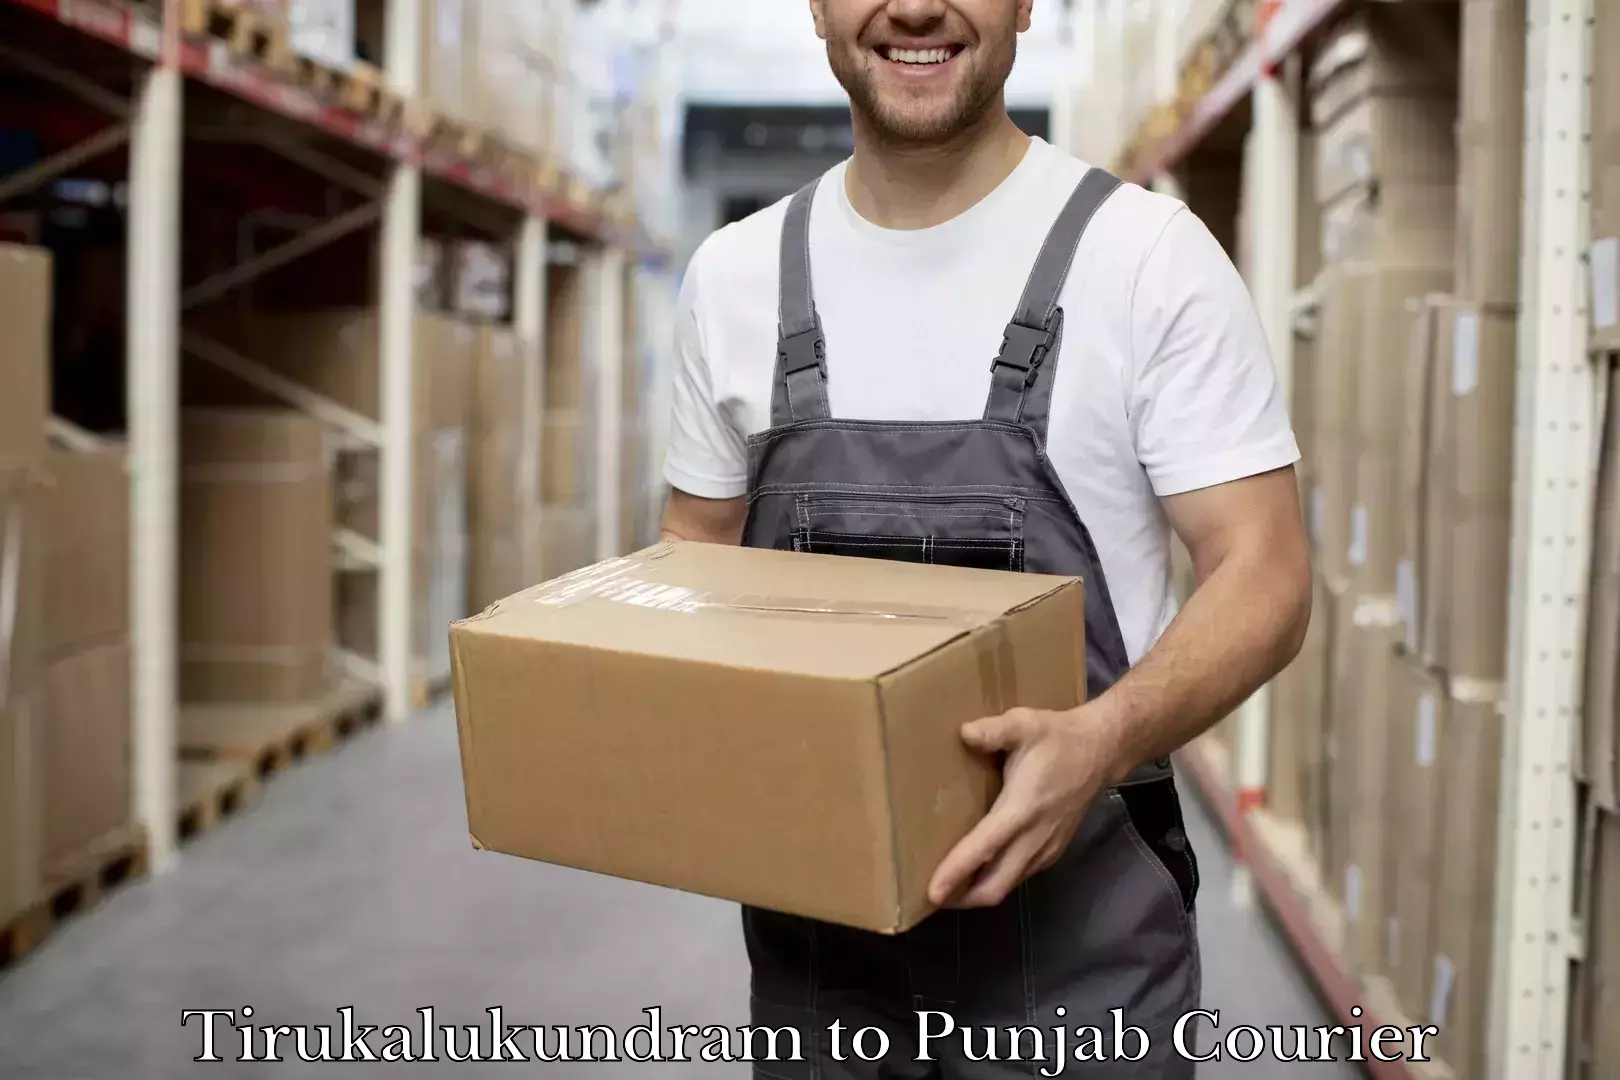 Safe luggage delivery in Tirukalukundram to Punjab